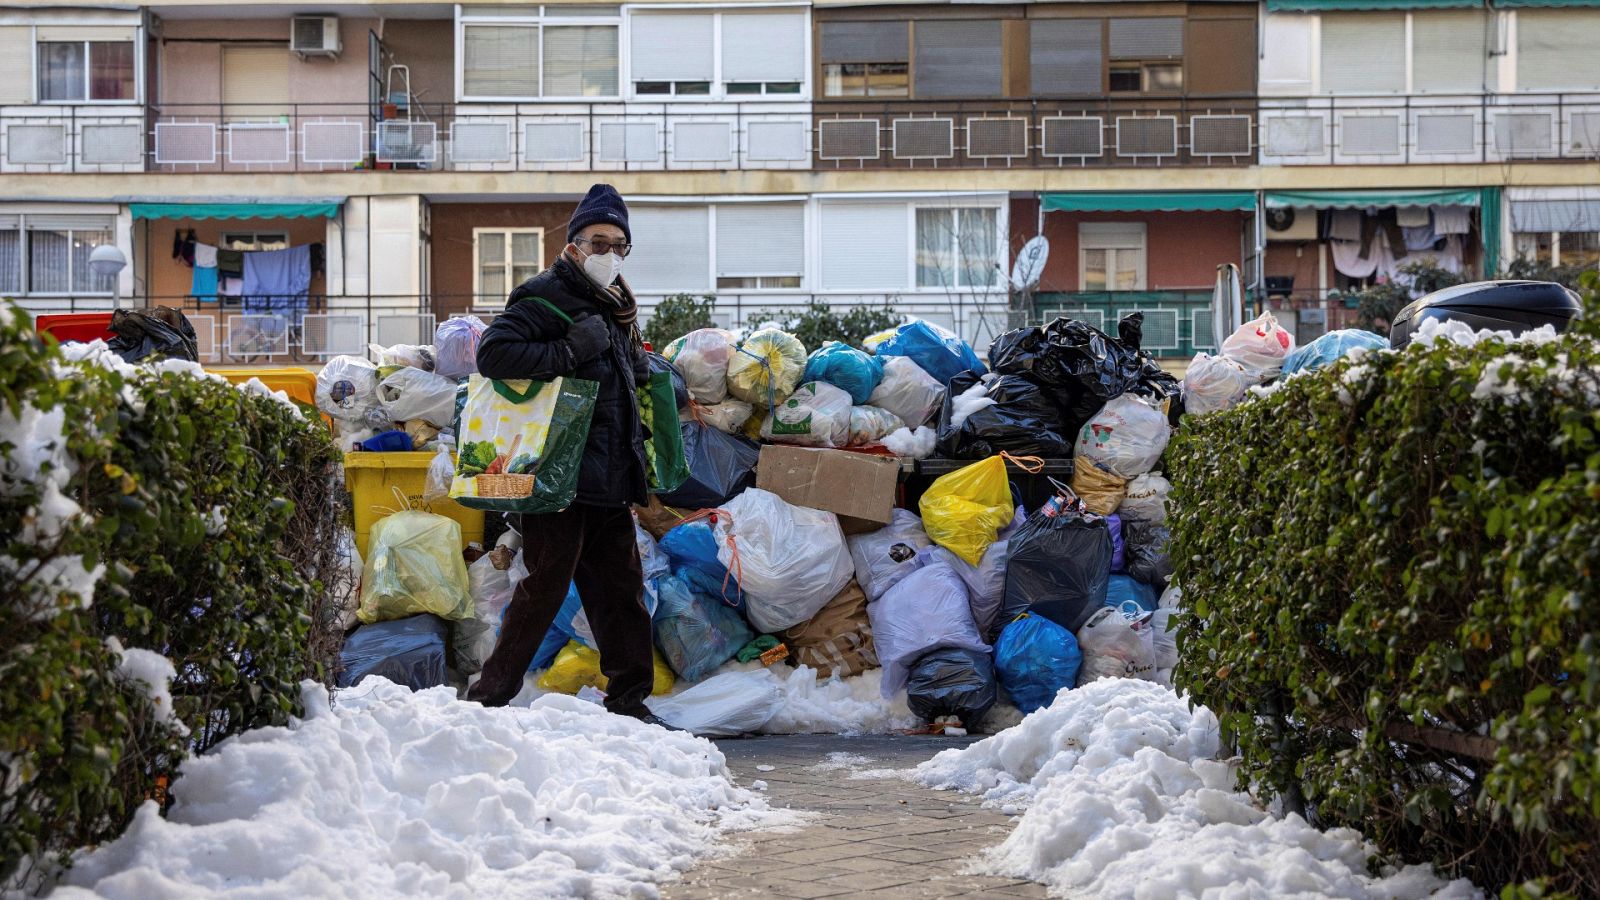 Los vecinos de Madrid siguen sin poder recuperar la normalidad: "Estamos quitando nieve para poder salir del portal"